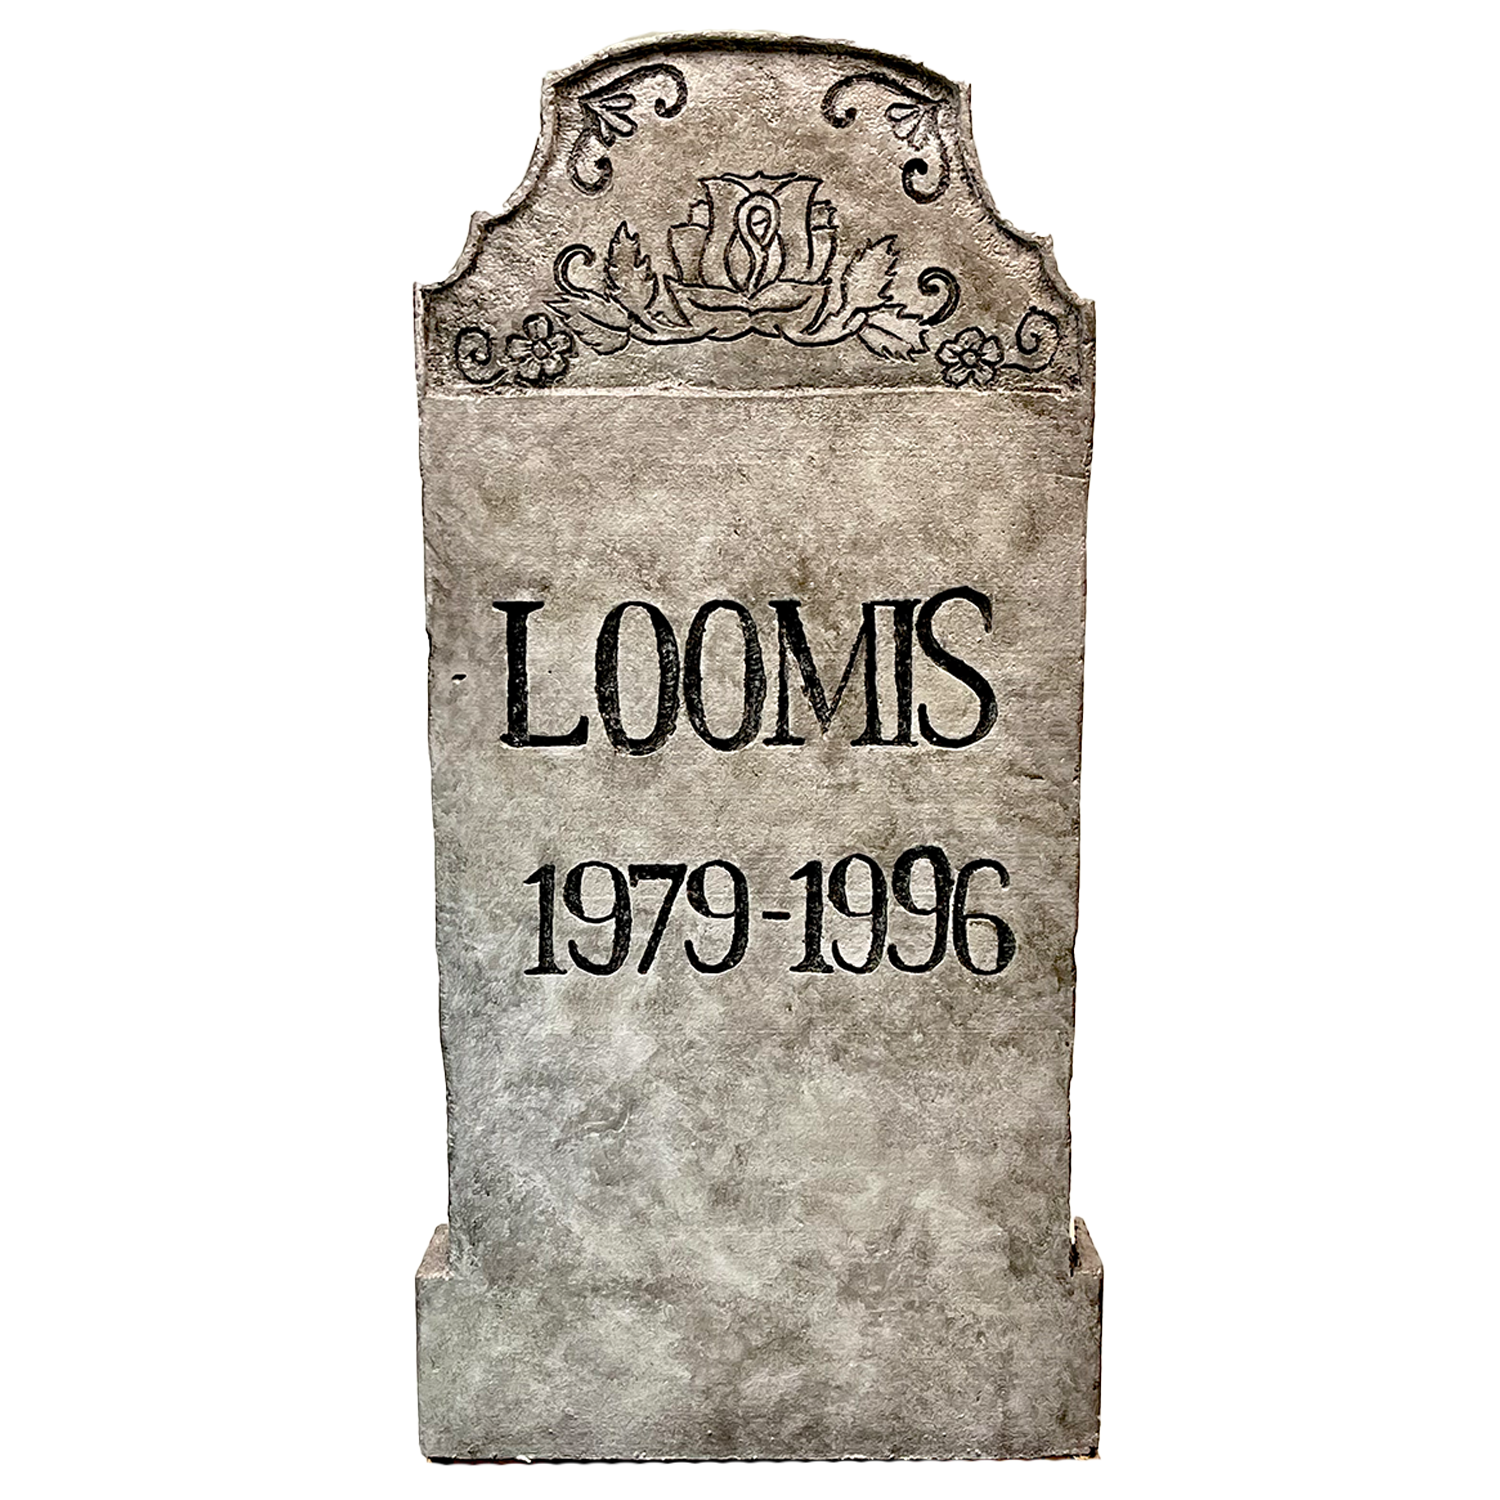 Loomis Handmade Tombstone